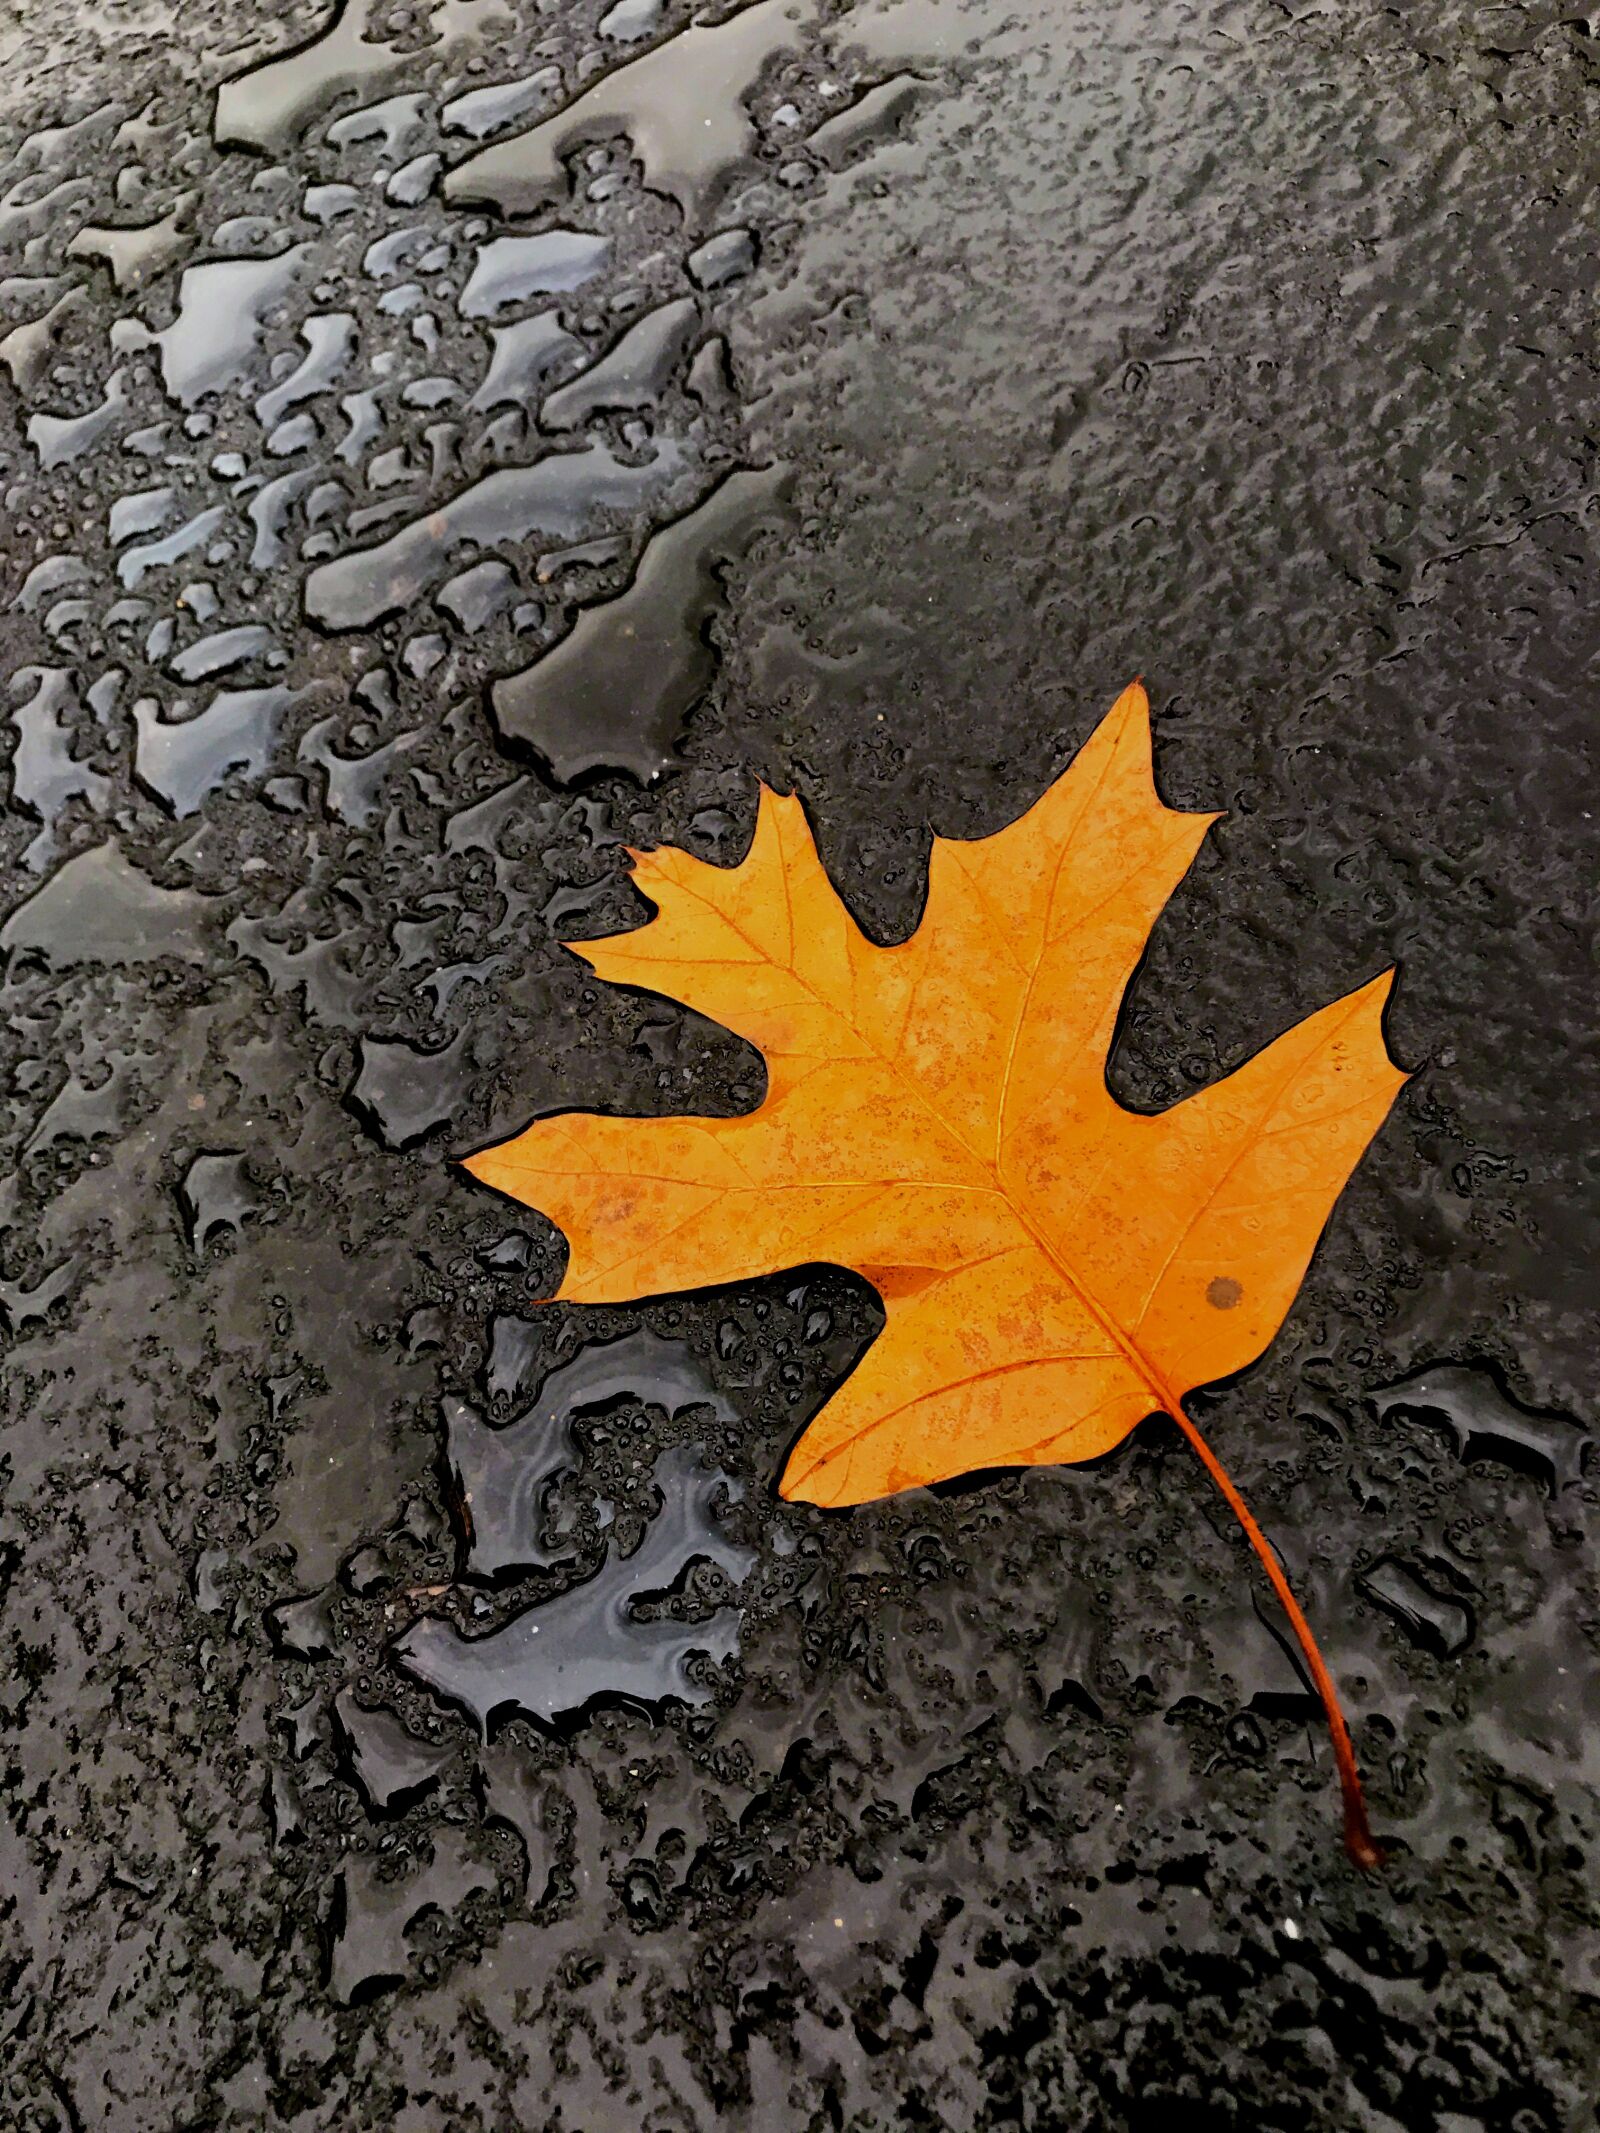 Apple iPhone 7 Plus sample photo. Leaf, autumn, fall photography